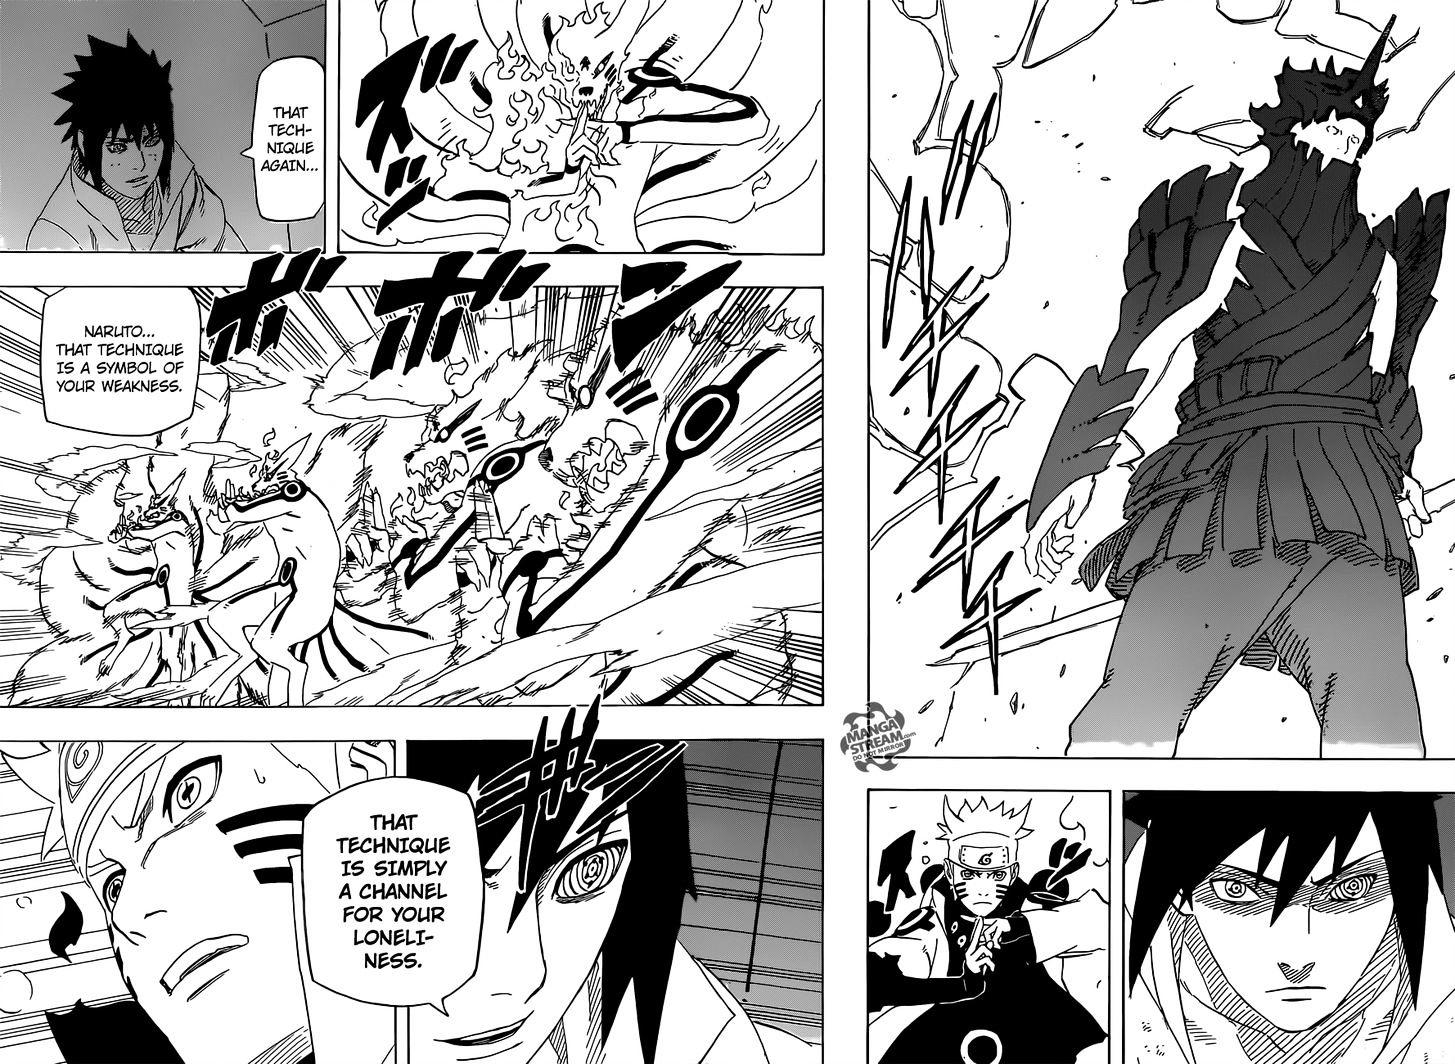 Vol.72 Chapter 696 – Naruto and Sasuke 3 | 8 page